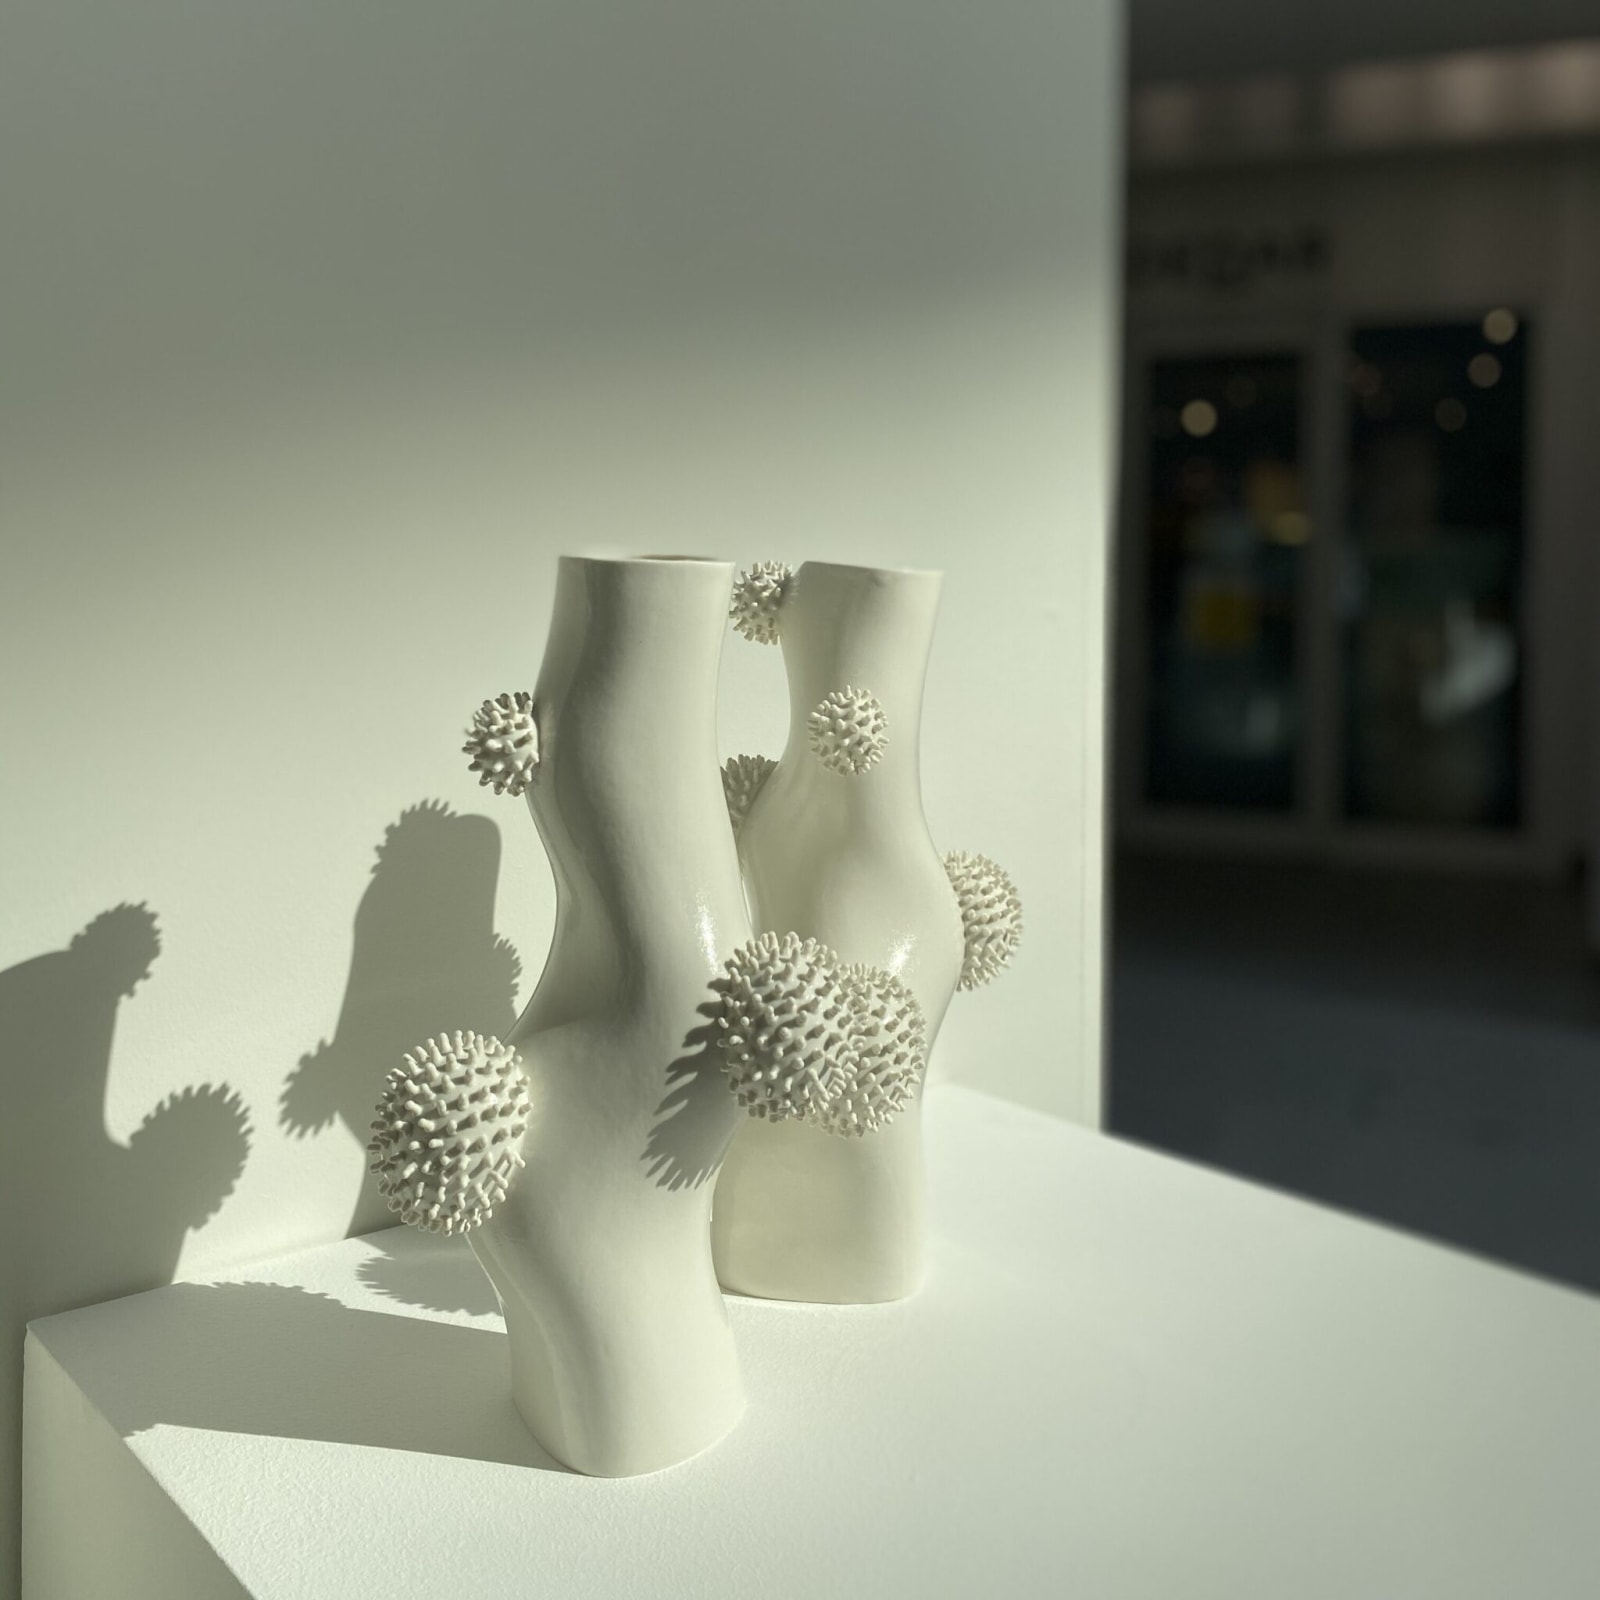 Ikuko Iwamoto - PofuPofu Vase Form, porcleian, approximately 30 cm high, 2020